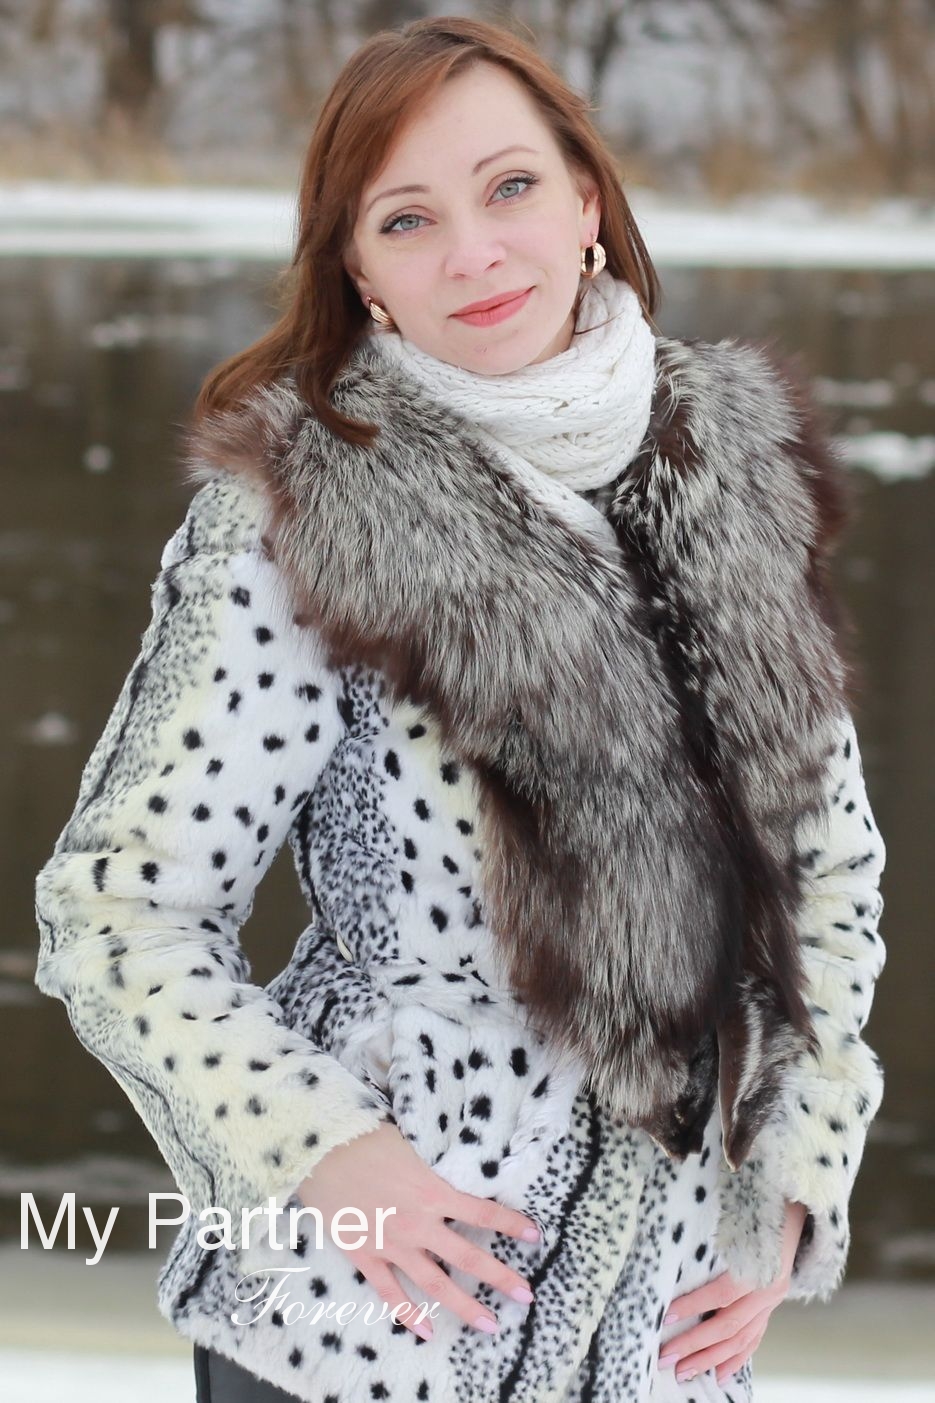 Meet Belarusian Woman Alesya from Grodno, Belarus